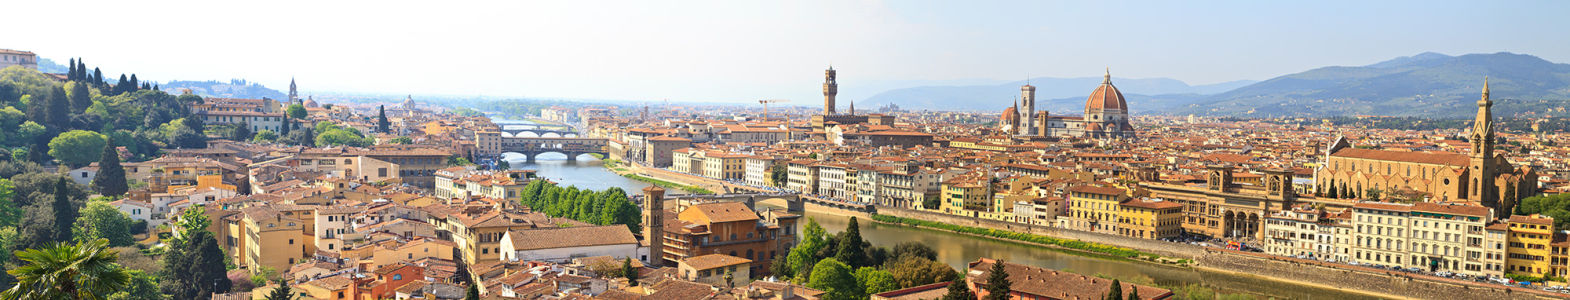 Фотообои Флоренция (panorama-60)